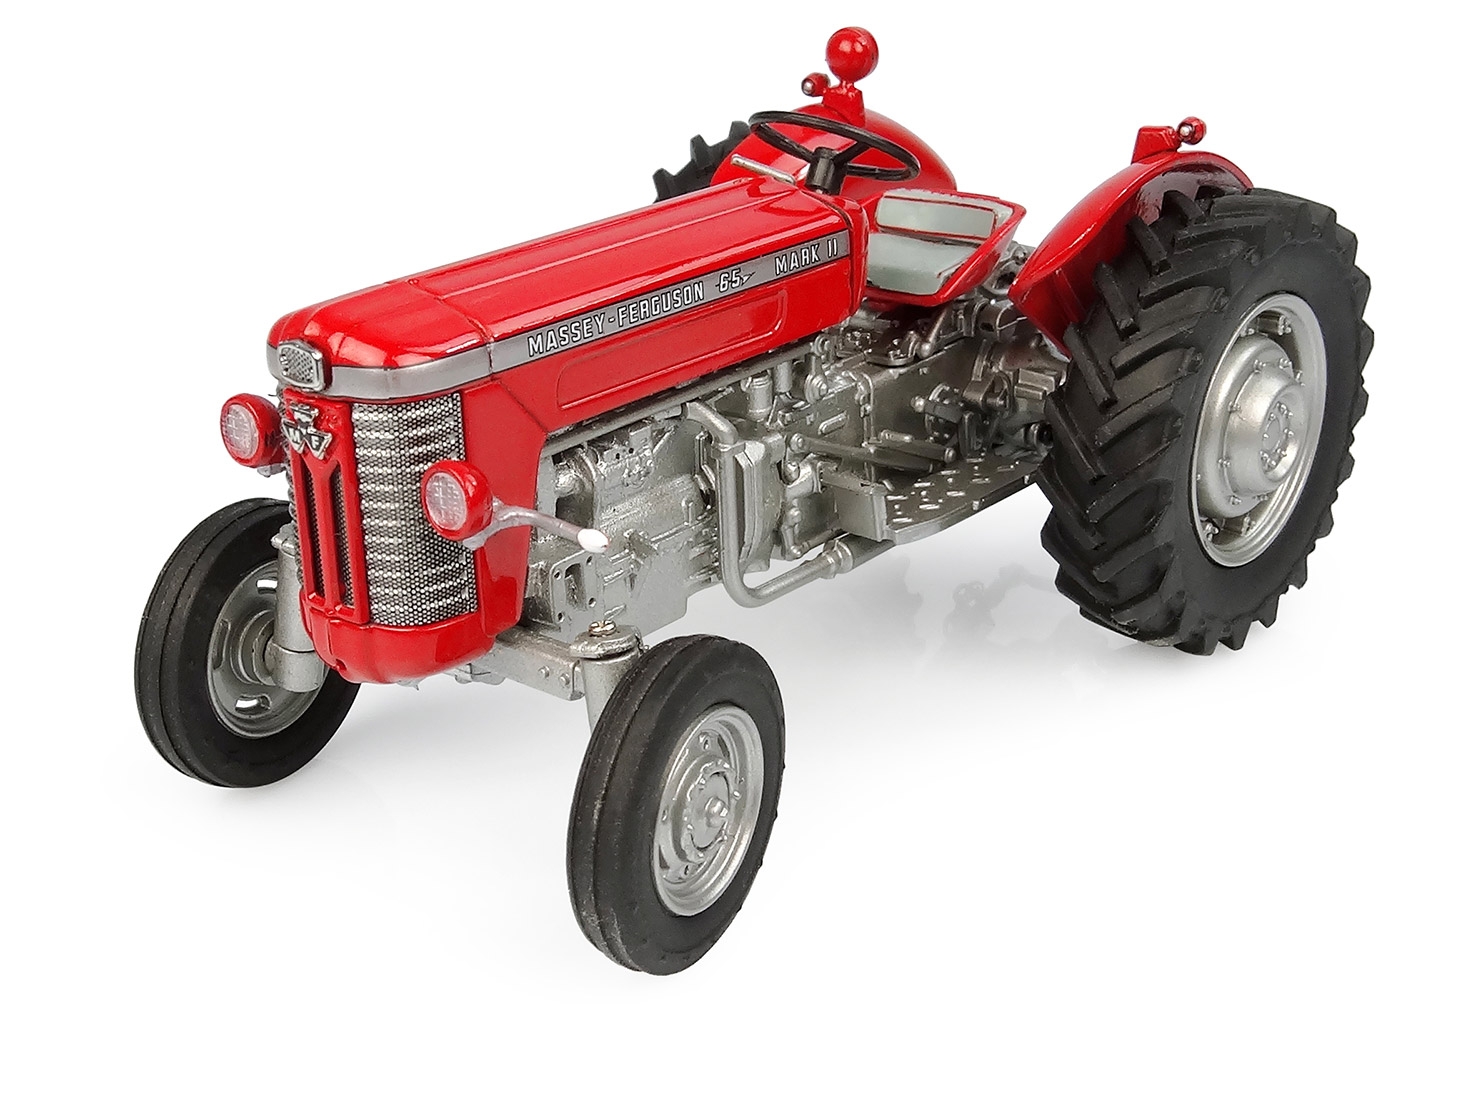 Tracteur agricole miniature à l'échelle 1/32